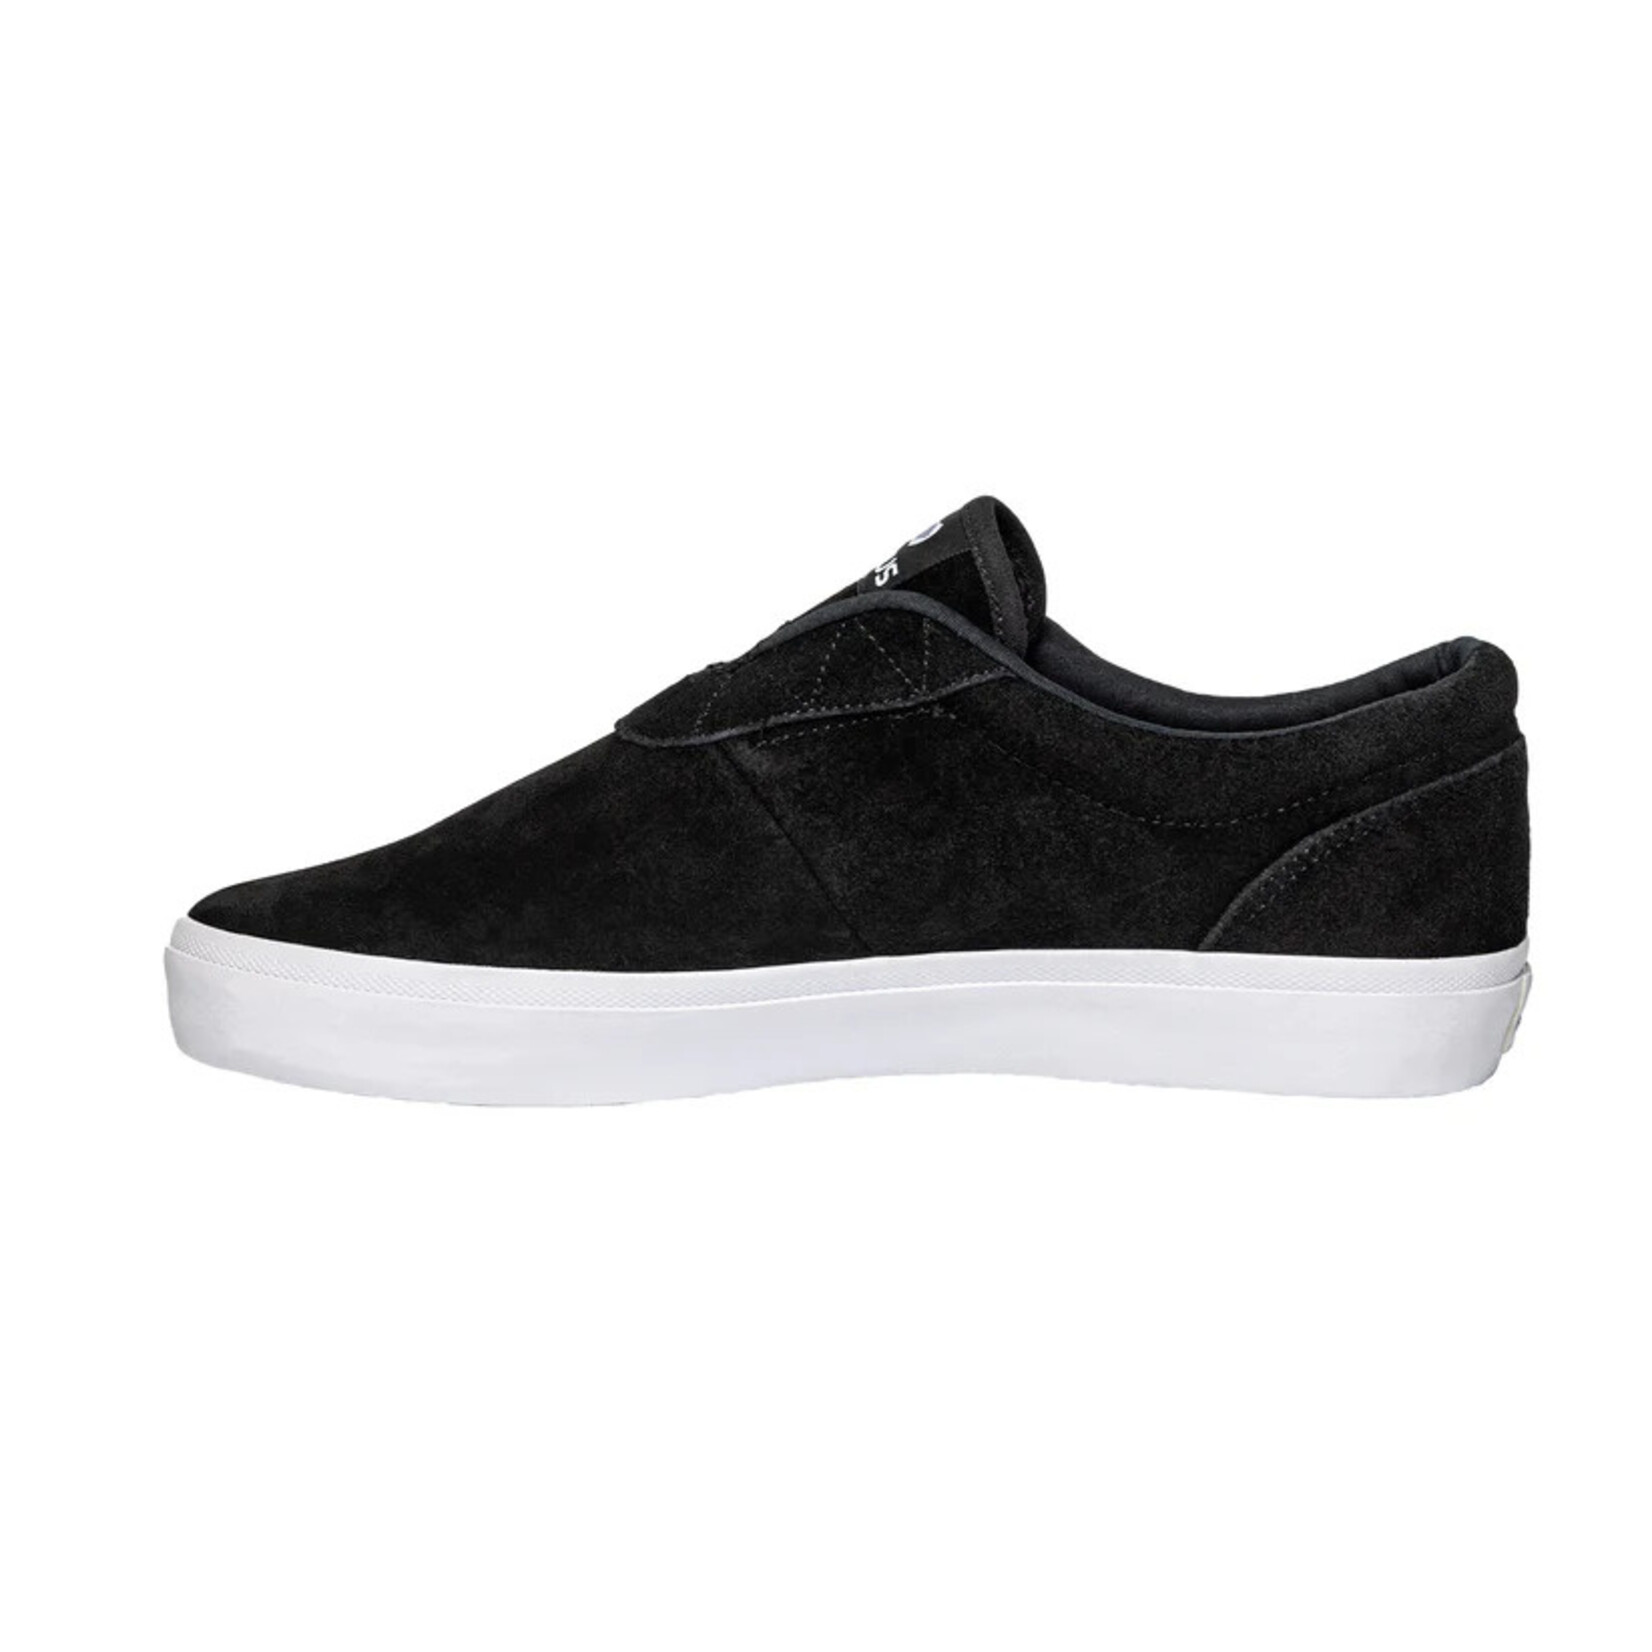 Opus Footwear Opus Footwear Honey Slip Suede - Black/White -